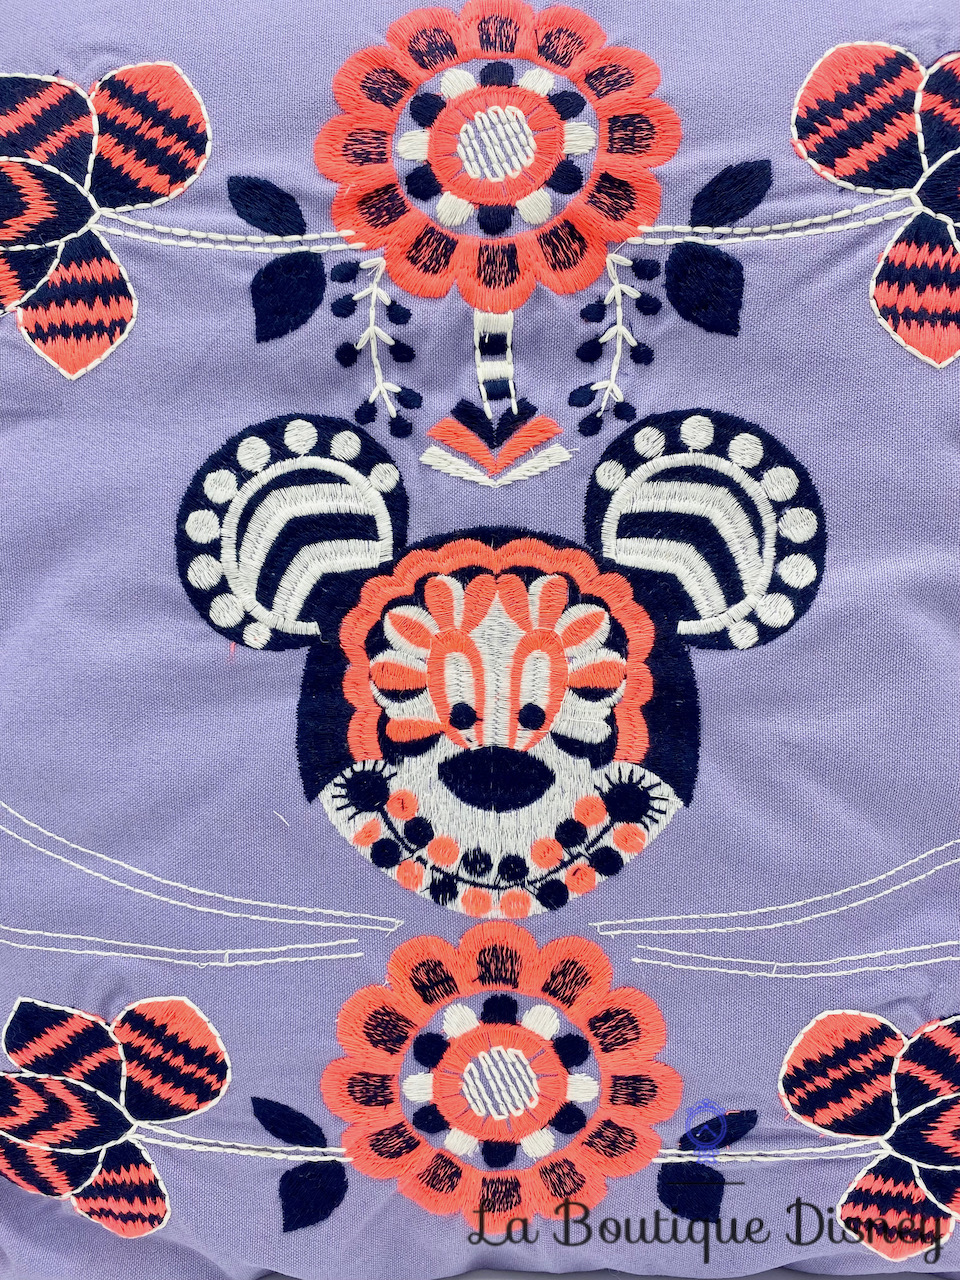 coussin-minnie-mouse-disneyland-paris-disney-antik-batik-25-designers-violet-hippie-0